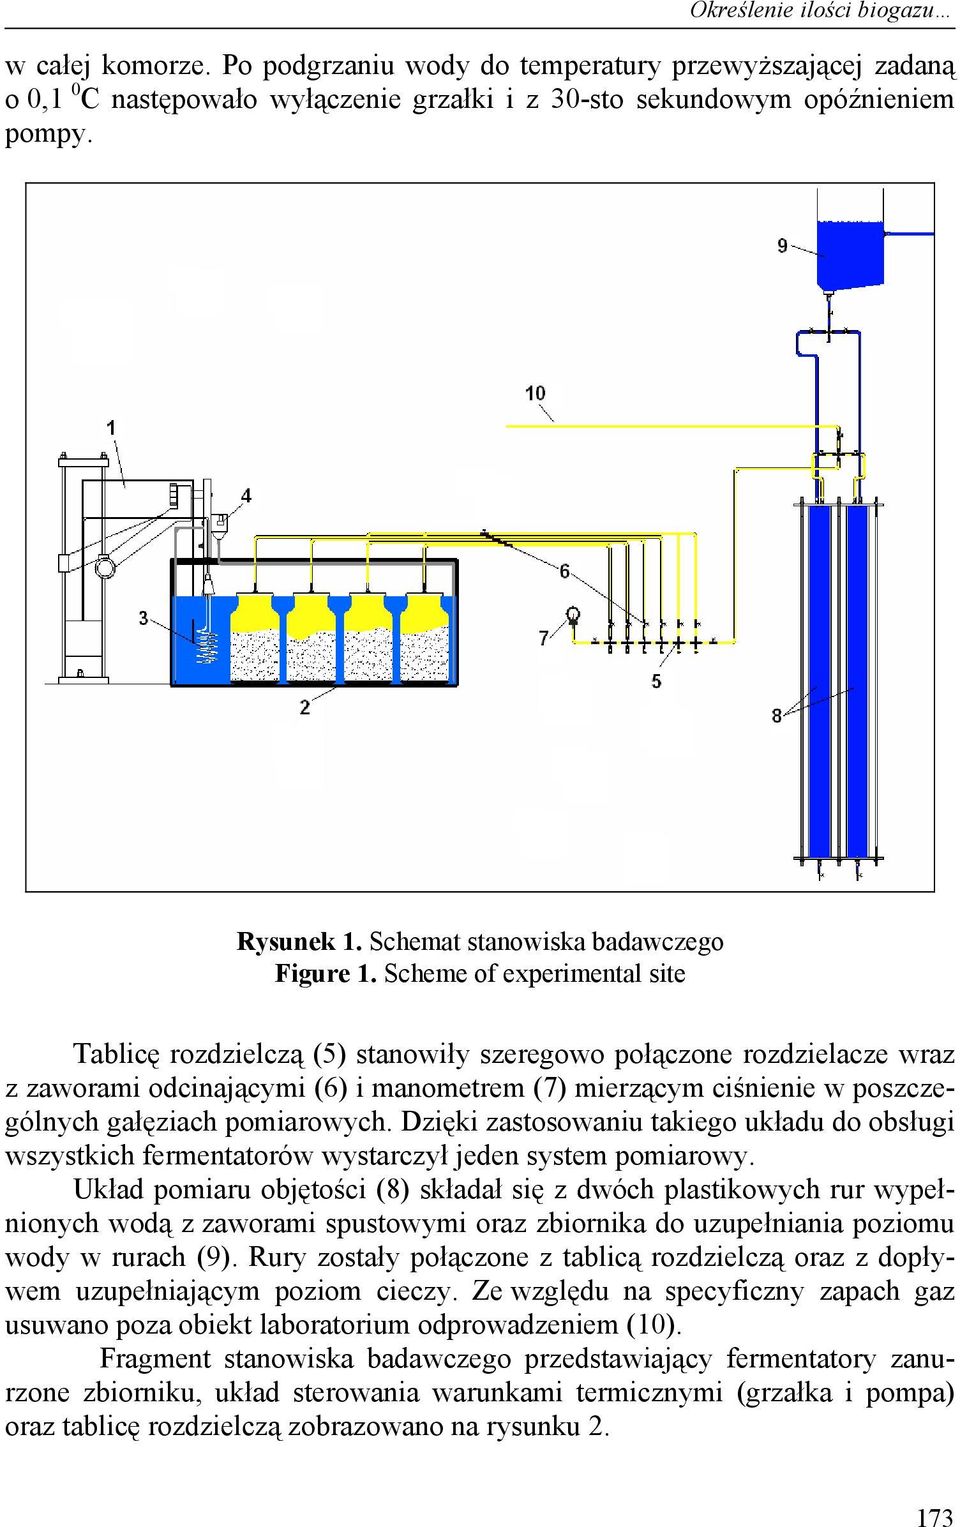 Scheme of experimental site Tablicę rozdzielczą (5) stanowiły szeregowo połączone rozdzielacze wraz z zaworami odcinającymi (6) i manometrem (7) mierzącym ciśnienie w poszczególnych gałęziach